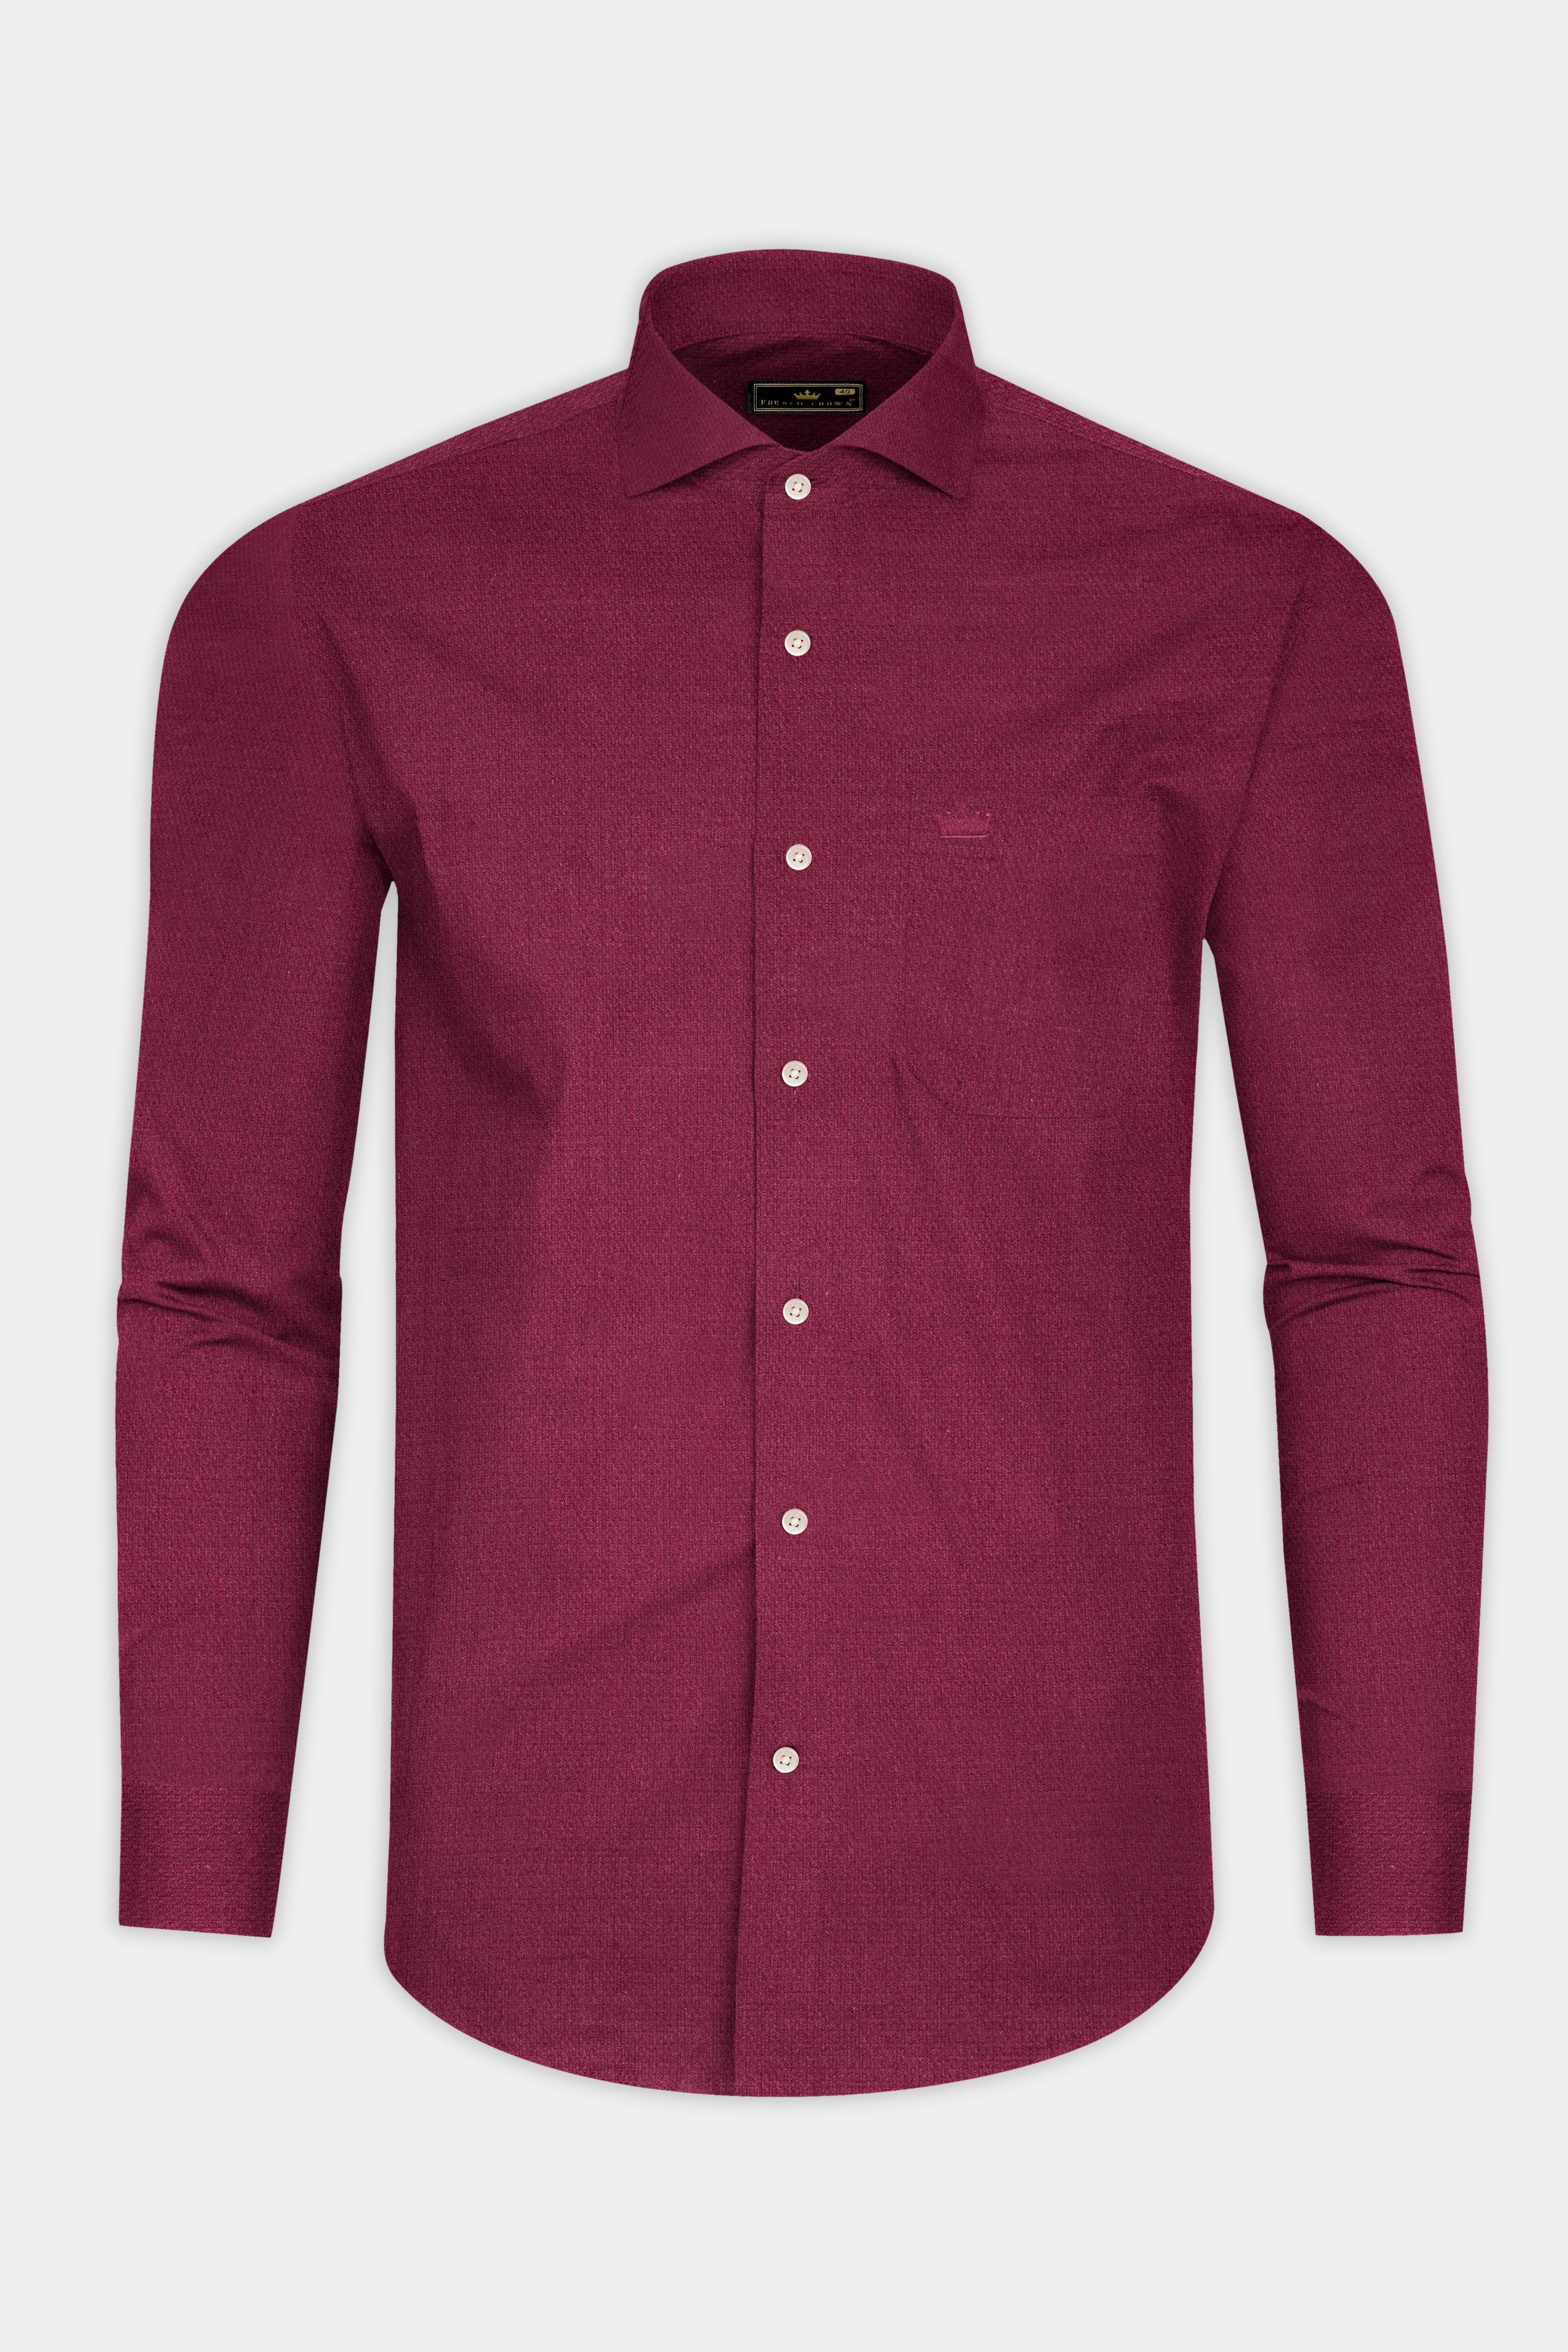 Wine Red Dobby Textured Premium Cotton Shirt